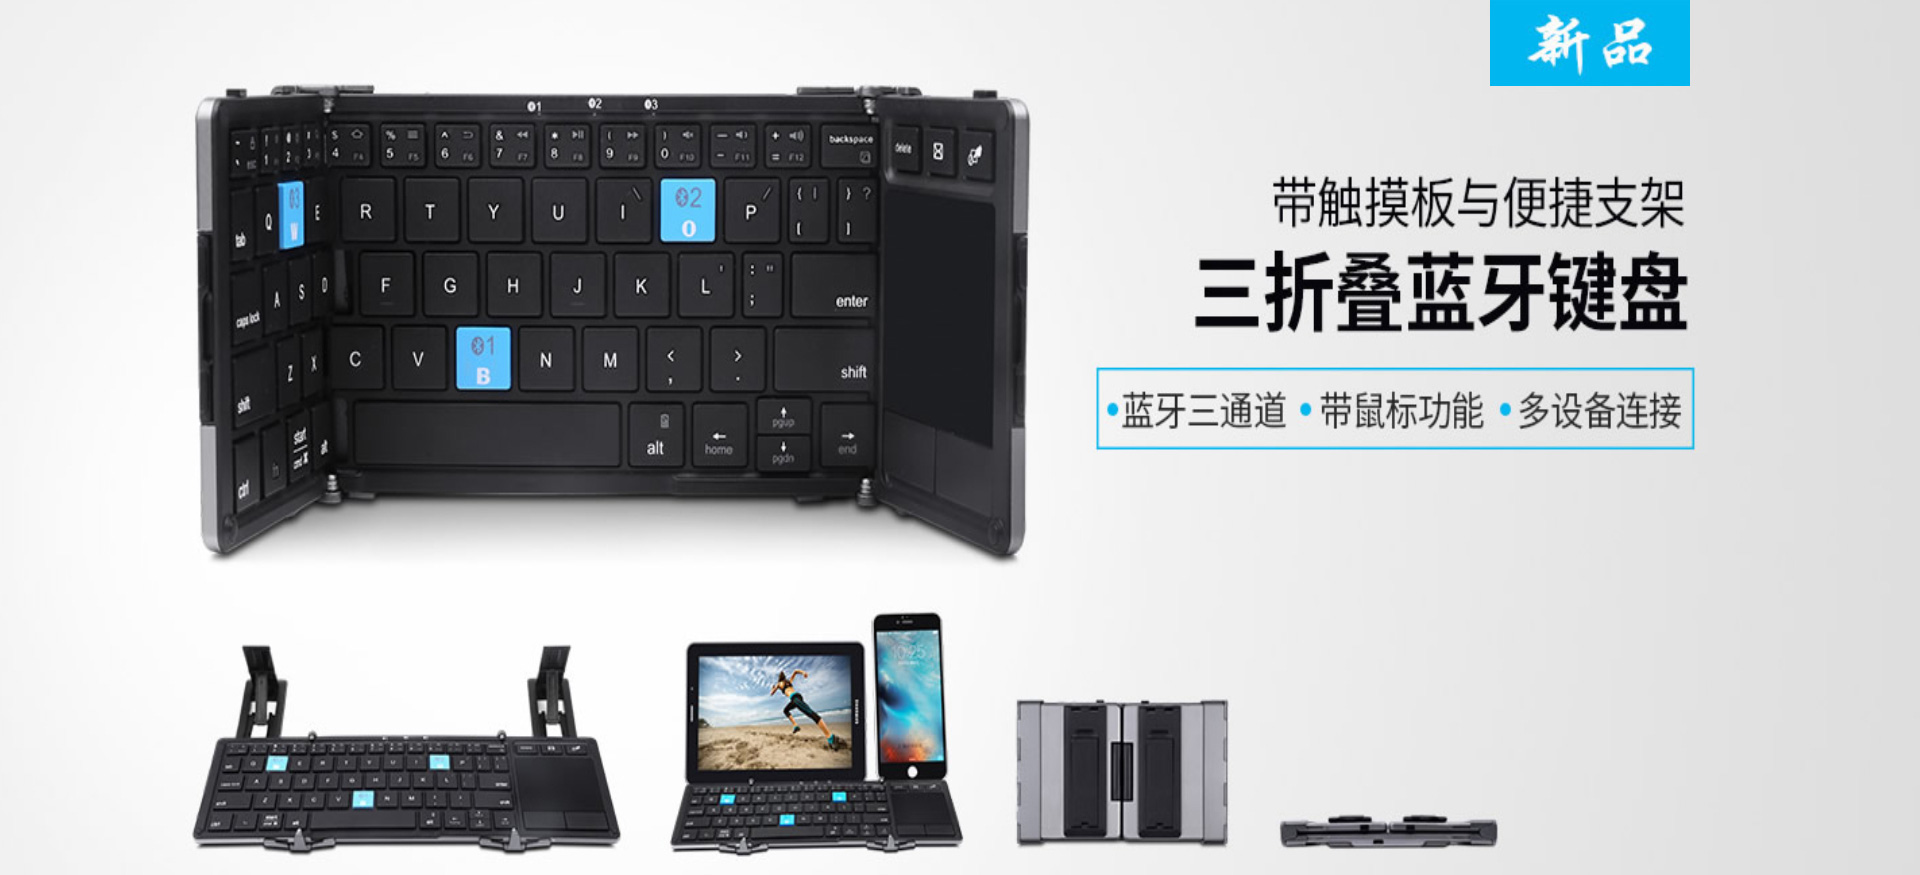 Folding keyboard, Bluetooth keyboard, wireless keyboard, keyboard and mouse set, wired keyboard, wired mouse, wireless mouse, digital keyboard